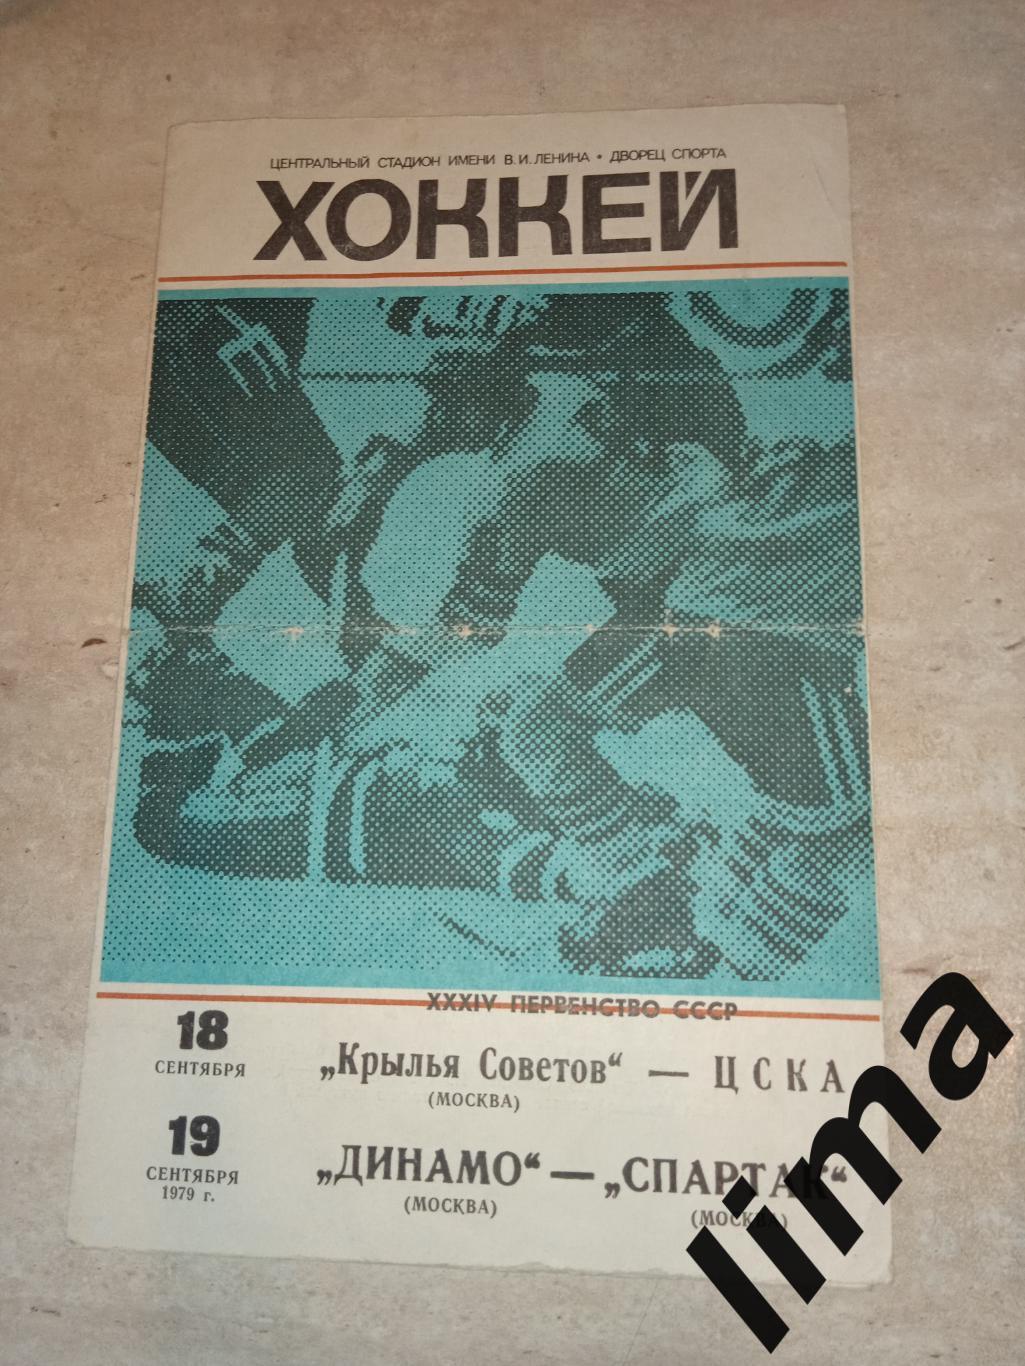 Крылья советов - ЦСКА, Динамо - Спартак Москва 1979